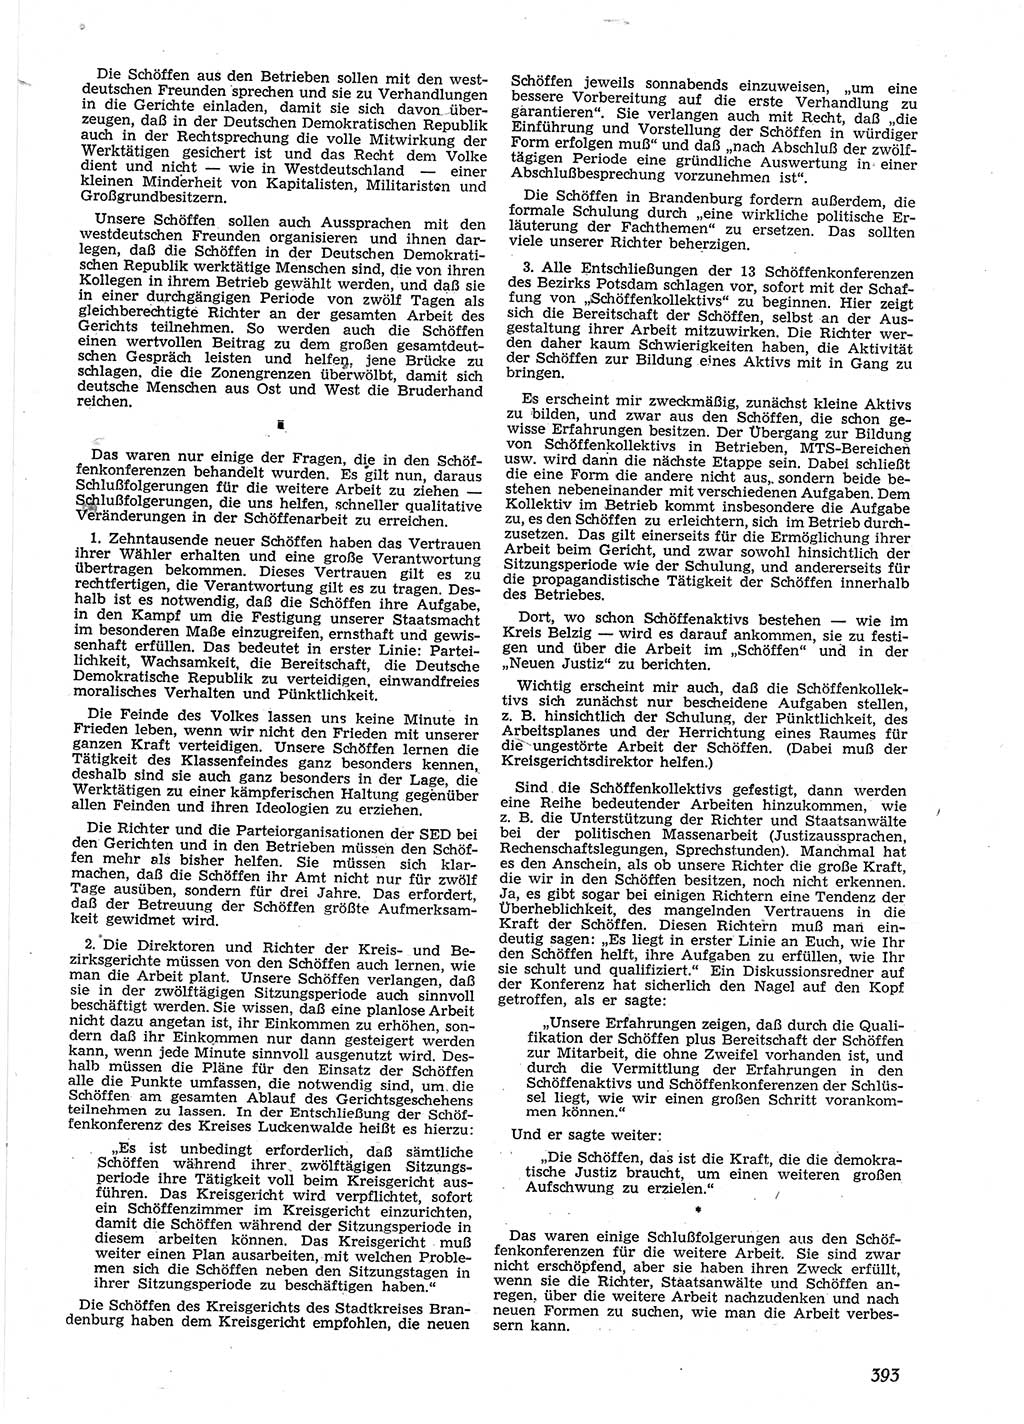 Neue Justiz (NJ), Zeitschrift für Recht und Rechtswissenschaft [Deutsche Demokratische Republik (DDR)], 9. Jahrgang 1955, Seite 393 (NJ DDR 1955, S. 393)